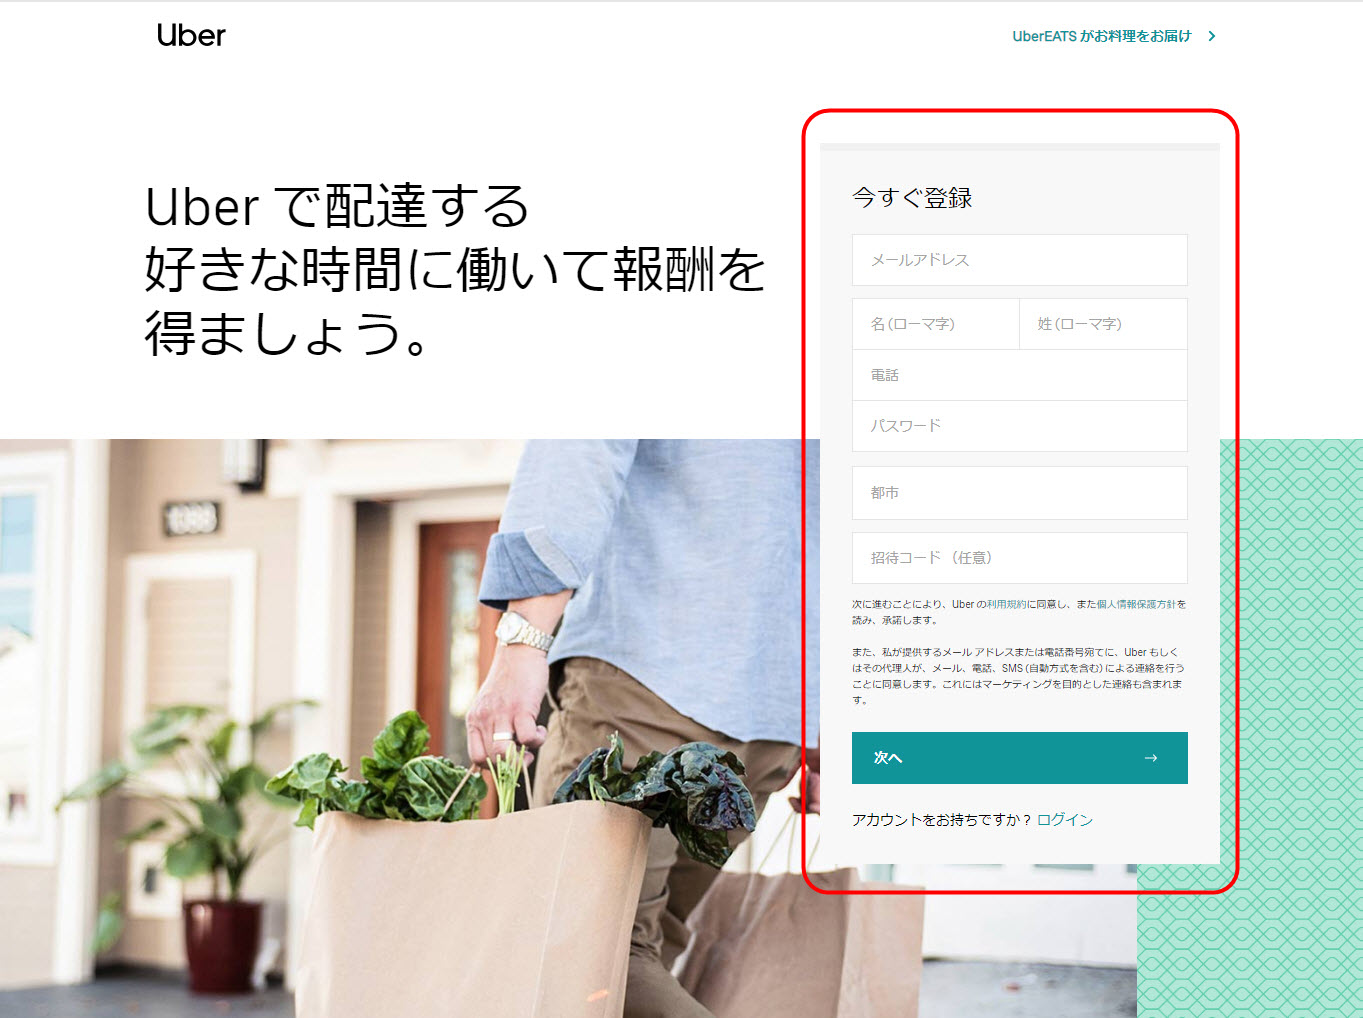 ウーバーイーツ 日野市 登録 東京都 日野 バイト エリア 始める 登録方法 始め方 配達パートナー 対象地域 範囲外 対応地域 サービスエリア外 UberEats Uber Eats